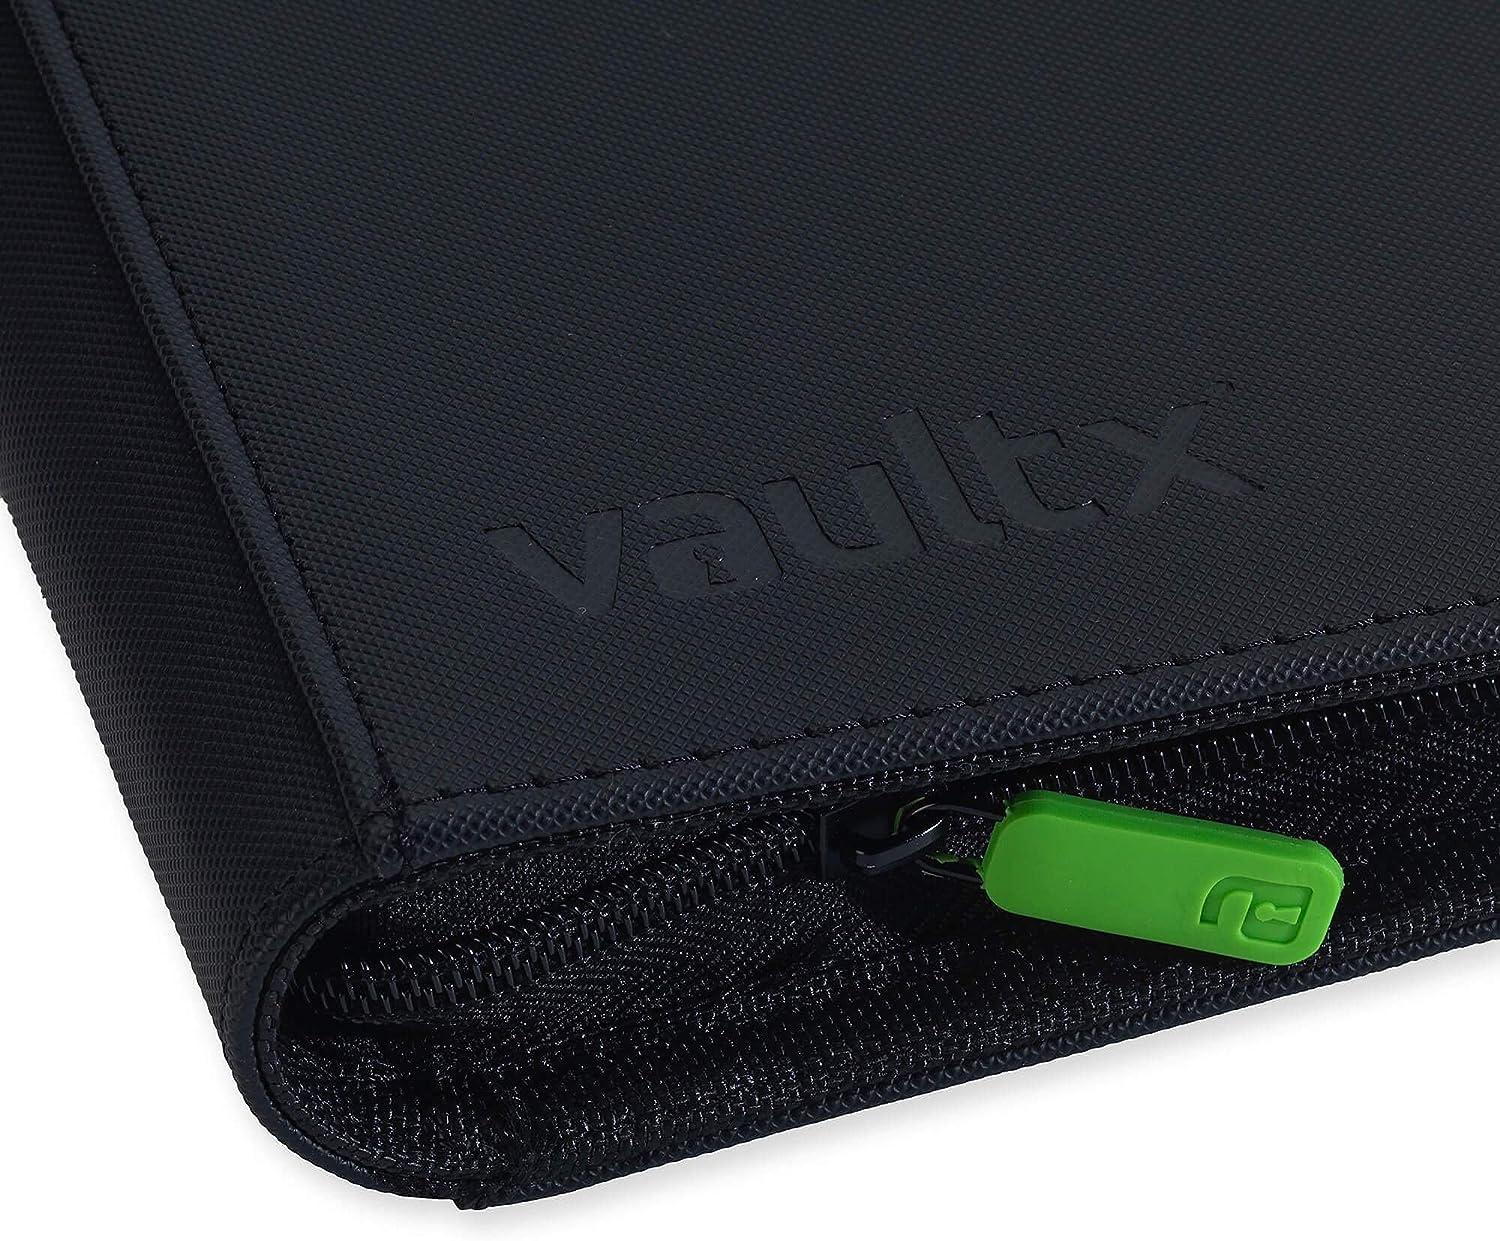  Vault X Premium Exo-Tec® Zip Binder - 4 Pocket Trading